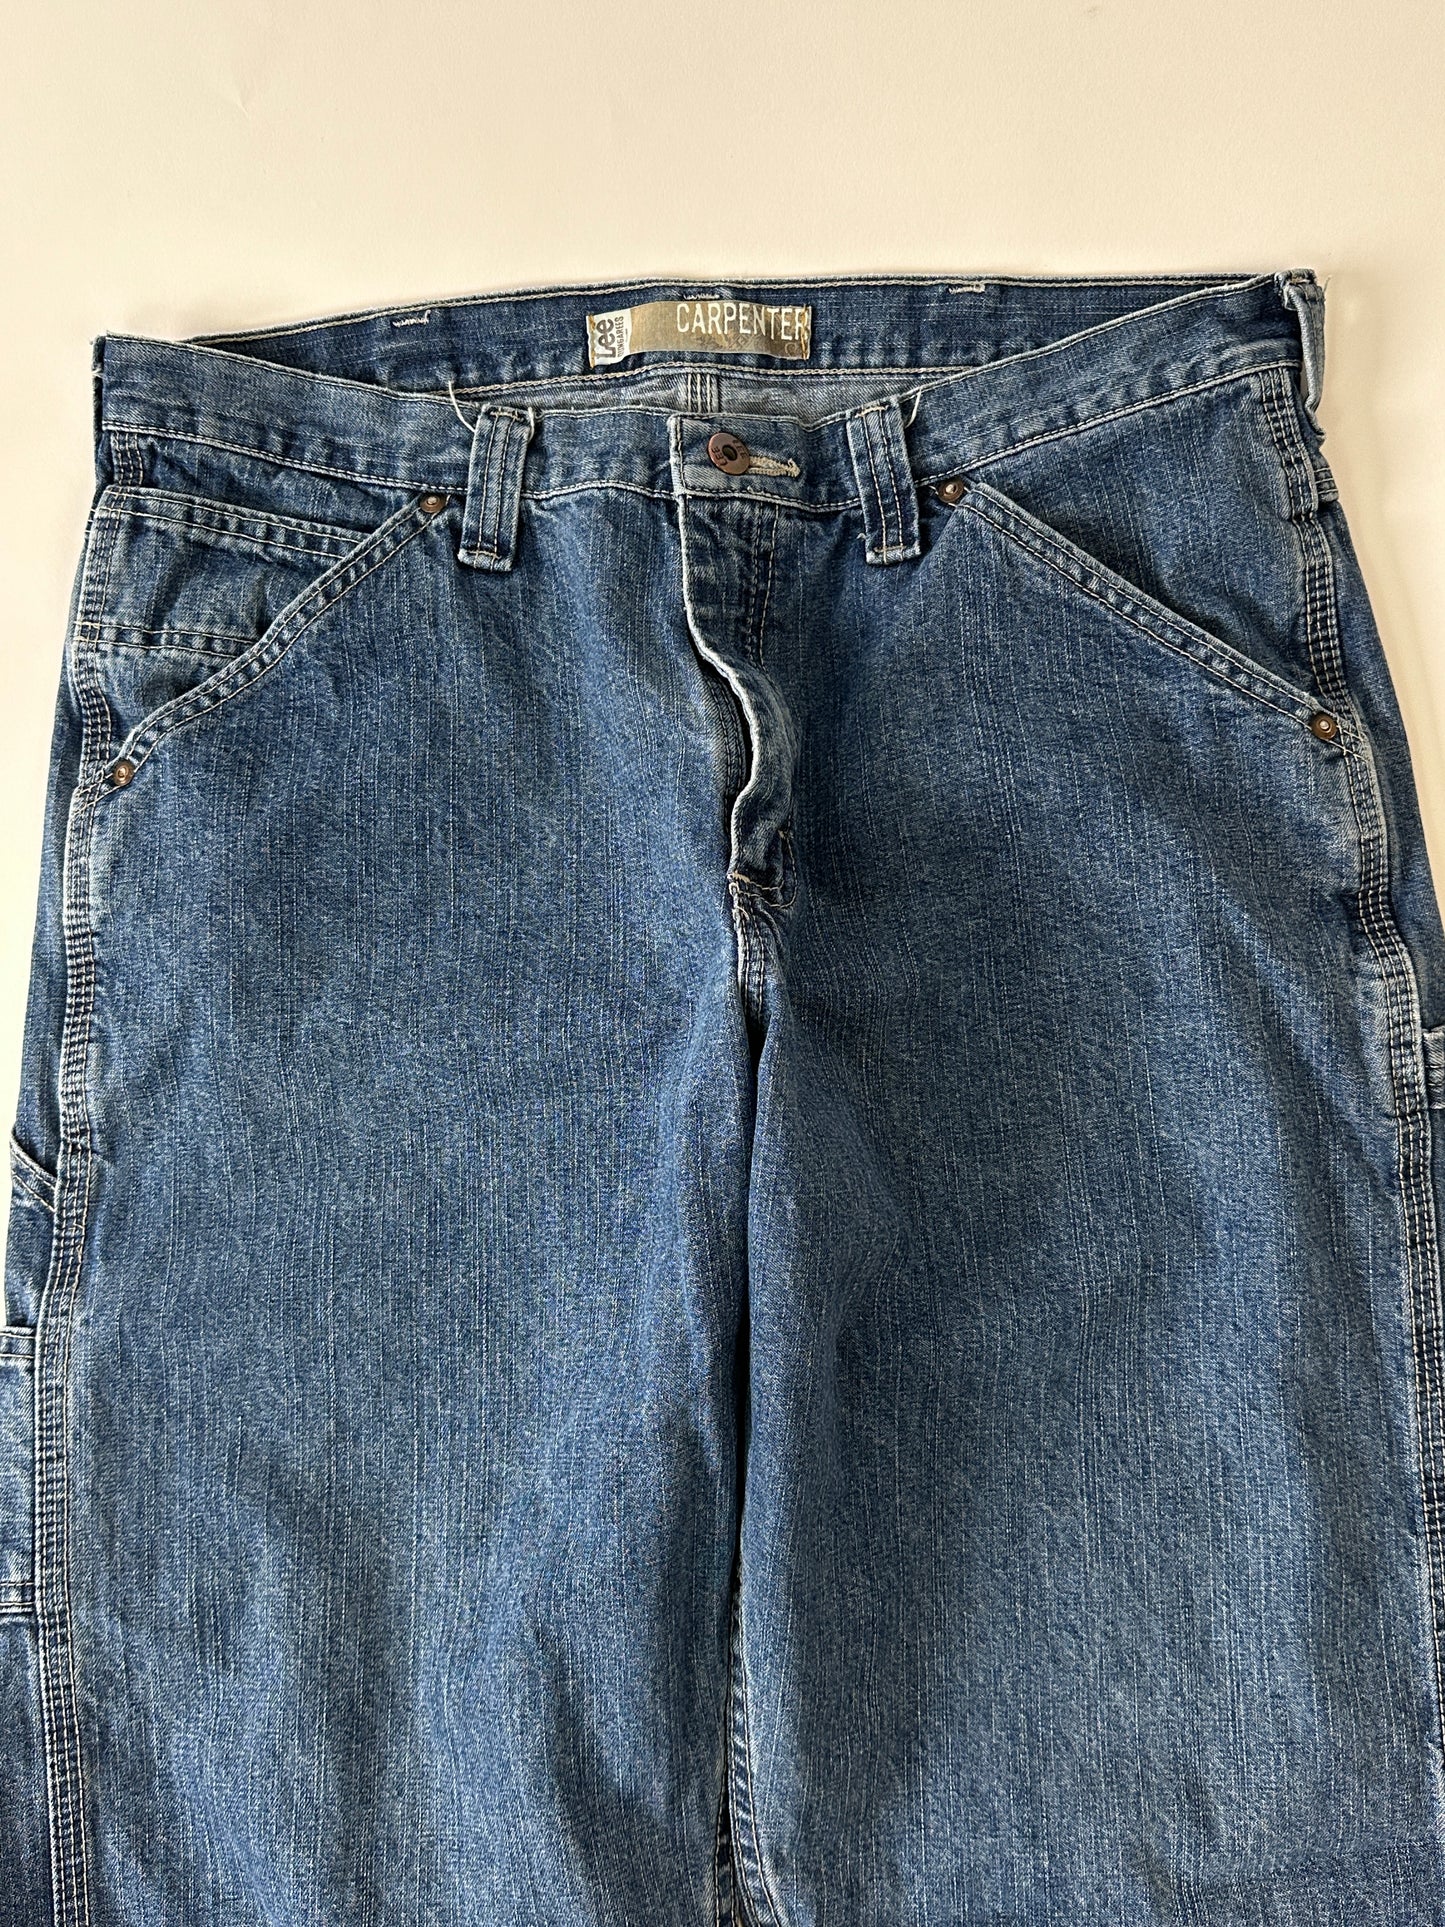 Lee Vintage Carpenter Jeans - 34 x 30